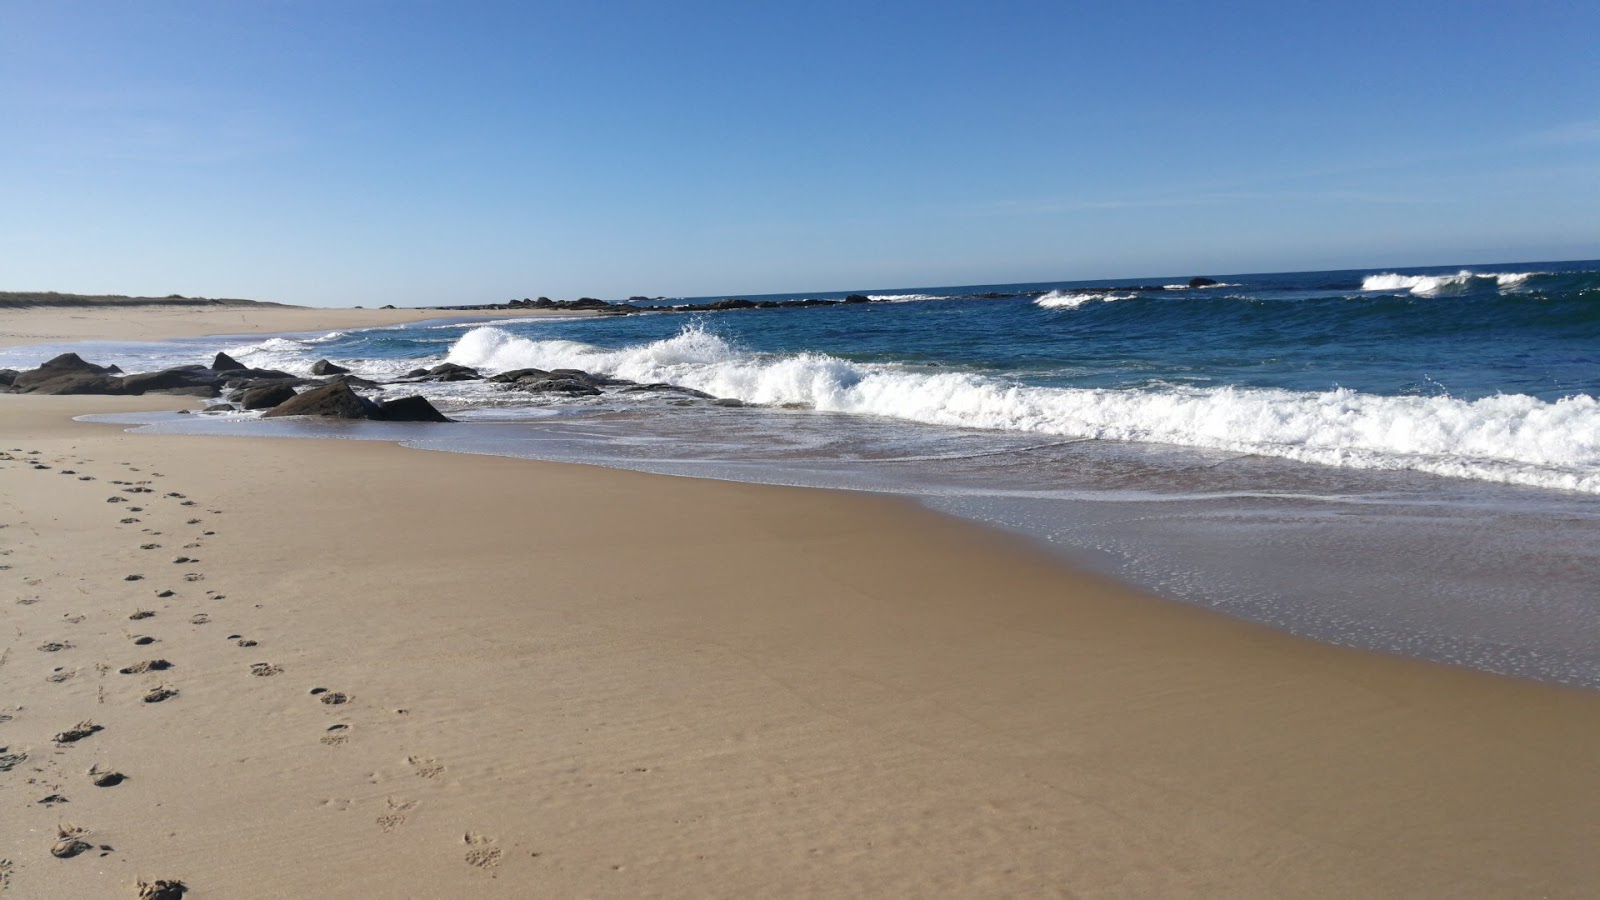 Zdjęcie Seixo beach z powierzchnią jasny piasek